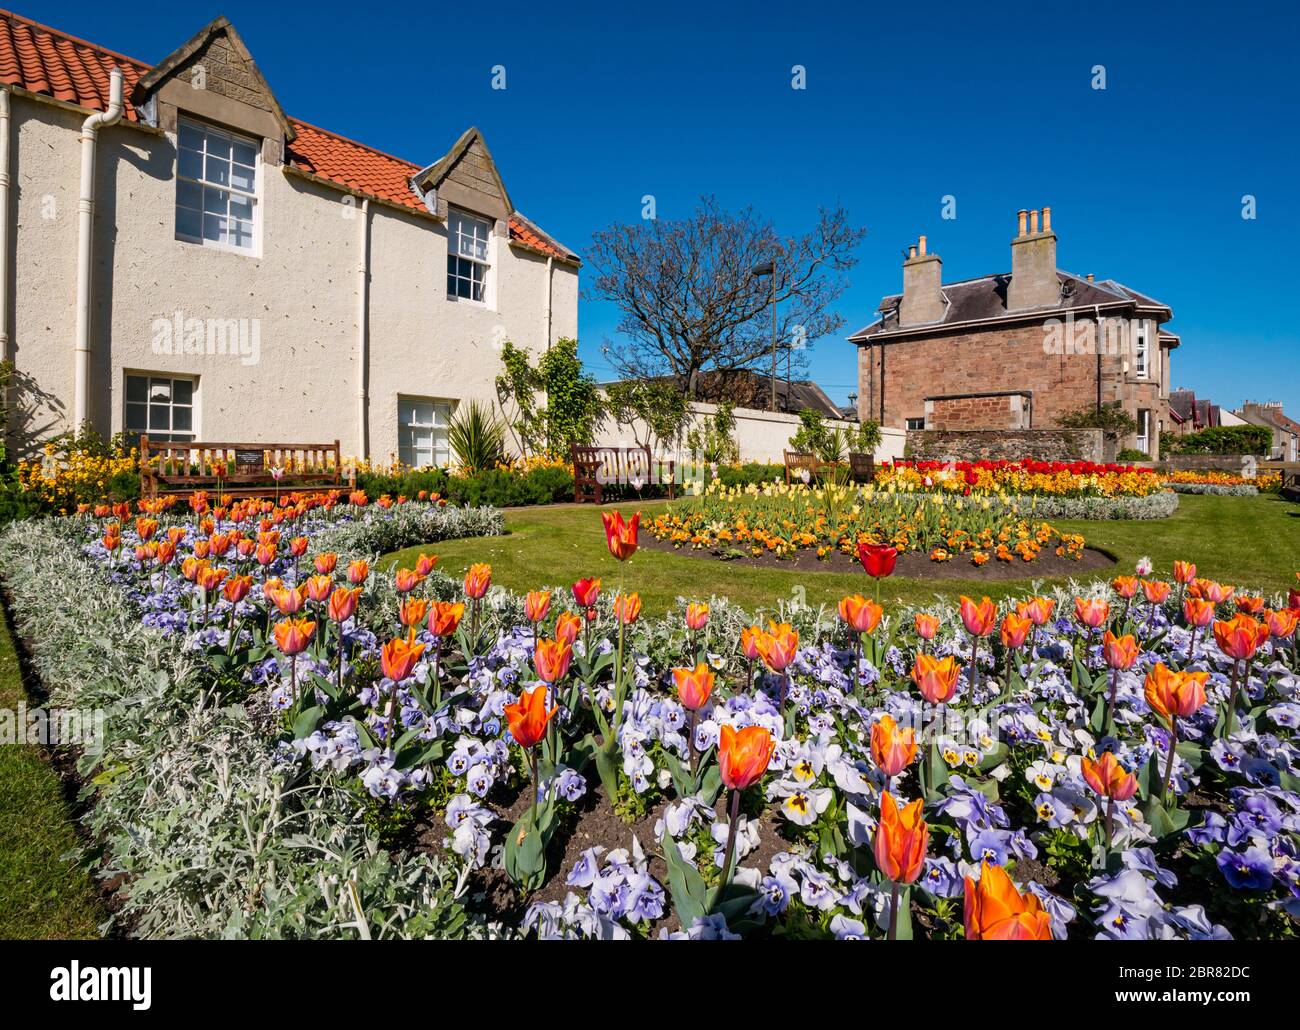 Fiori colorati di primavera nel giardino commemorativo della guerra con panchine vuote durante il blocco pandemico Covid, North Berwick, East Lothian, Scozia, Regno Unito Foto Stock